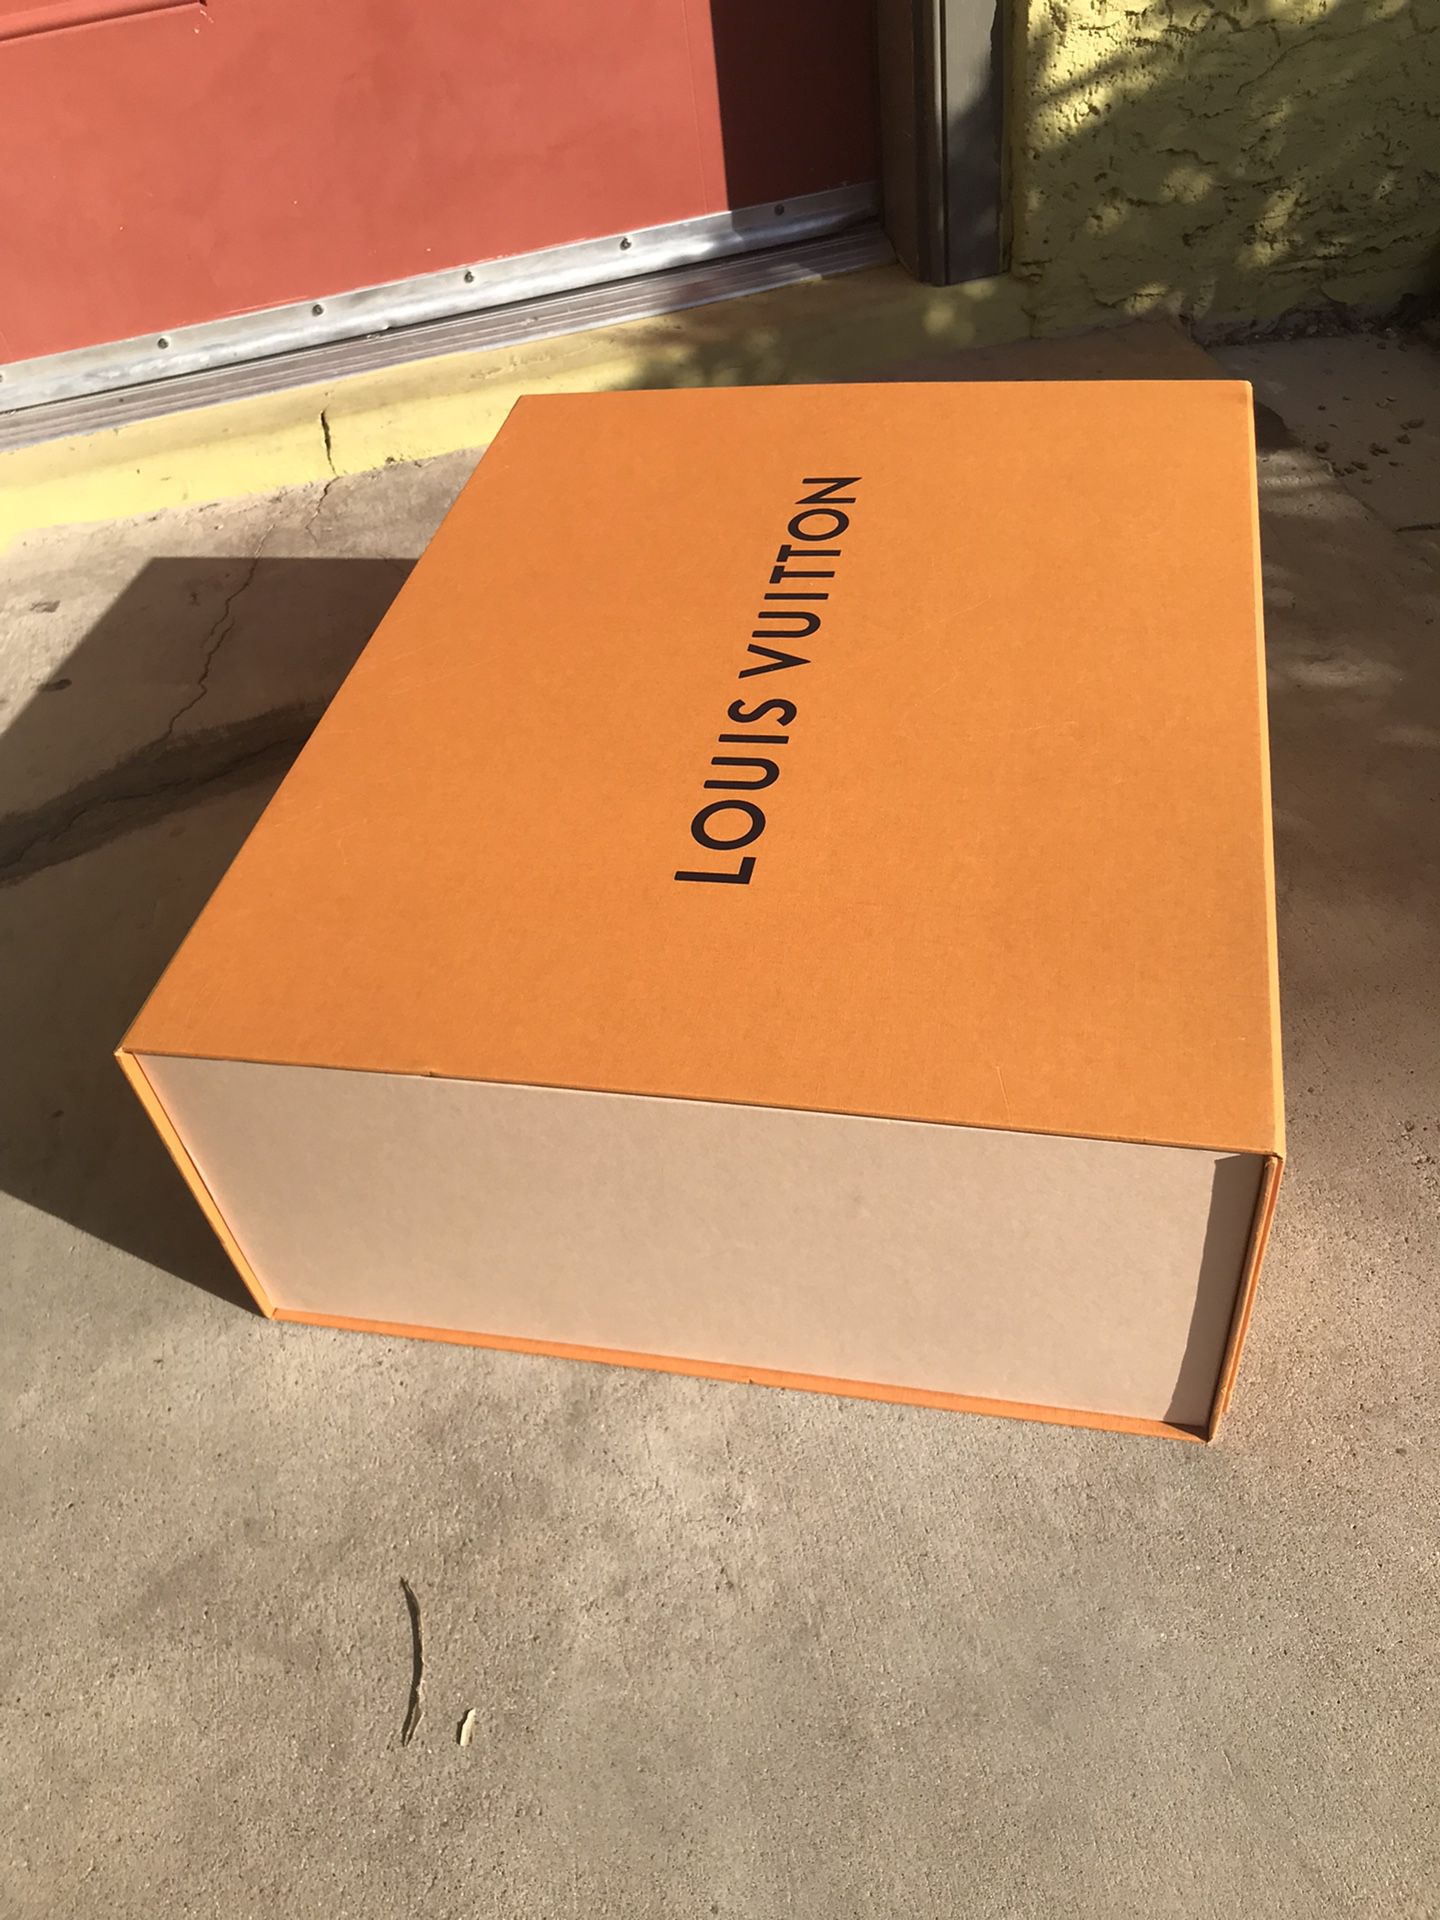 Louis Vuitton Authentic Unassembled Box for Sale in Tucson, AZ